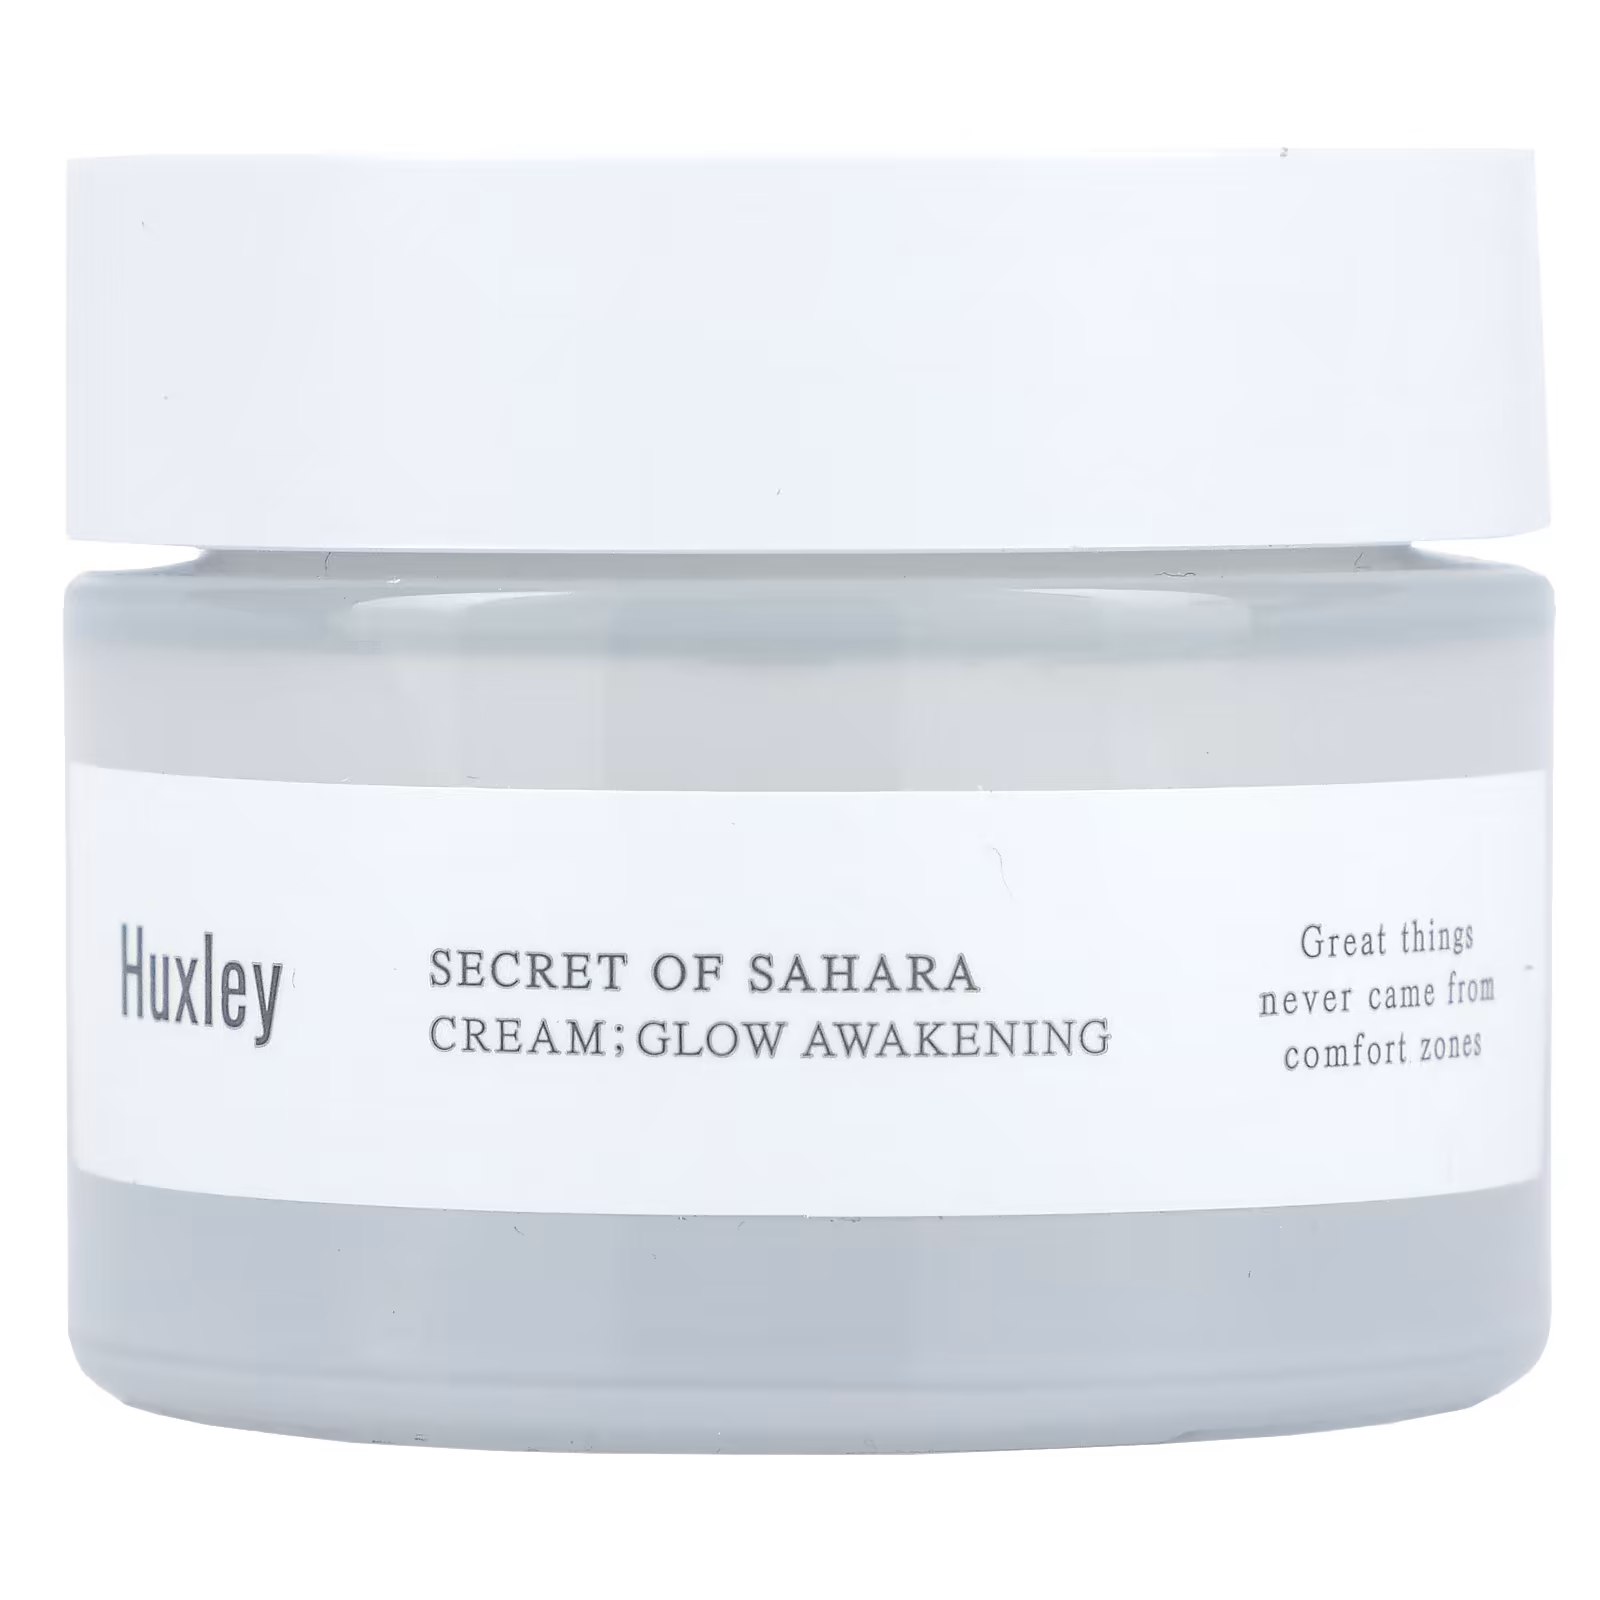 Крем Huxley Secret of Sahara пробуждающий сияние, 50 мл крем для лица huxley крем пробуждающий сияние кожи лица secret of sahara cream glow awakening